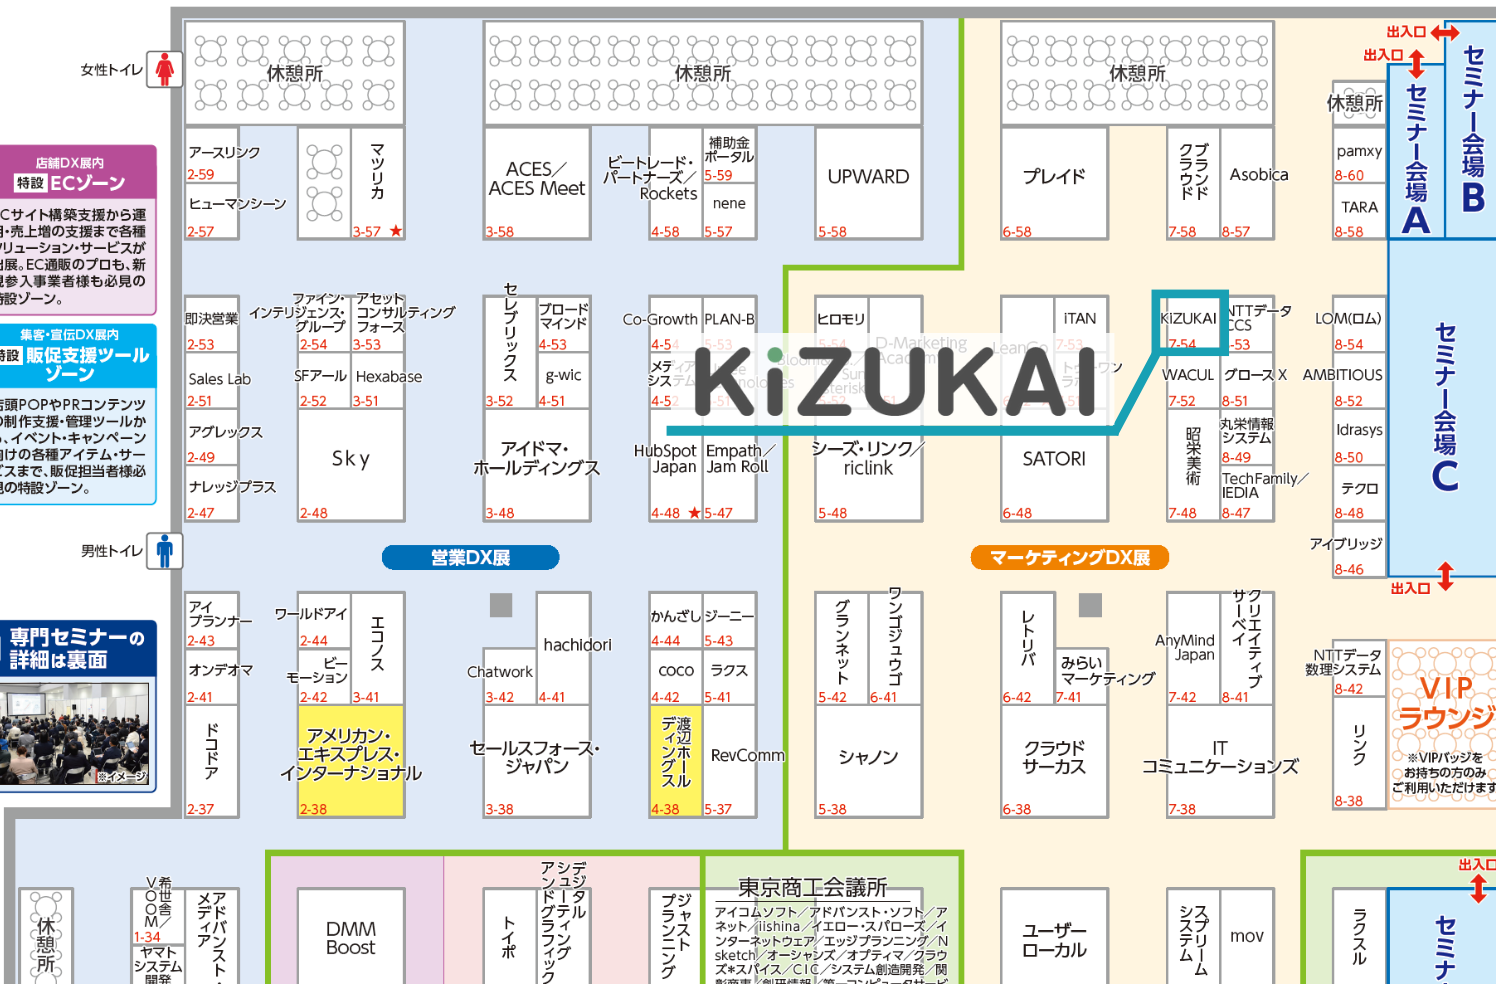 KiZUKAI（キヅカイ）出展ブース位置：7-54